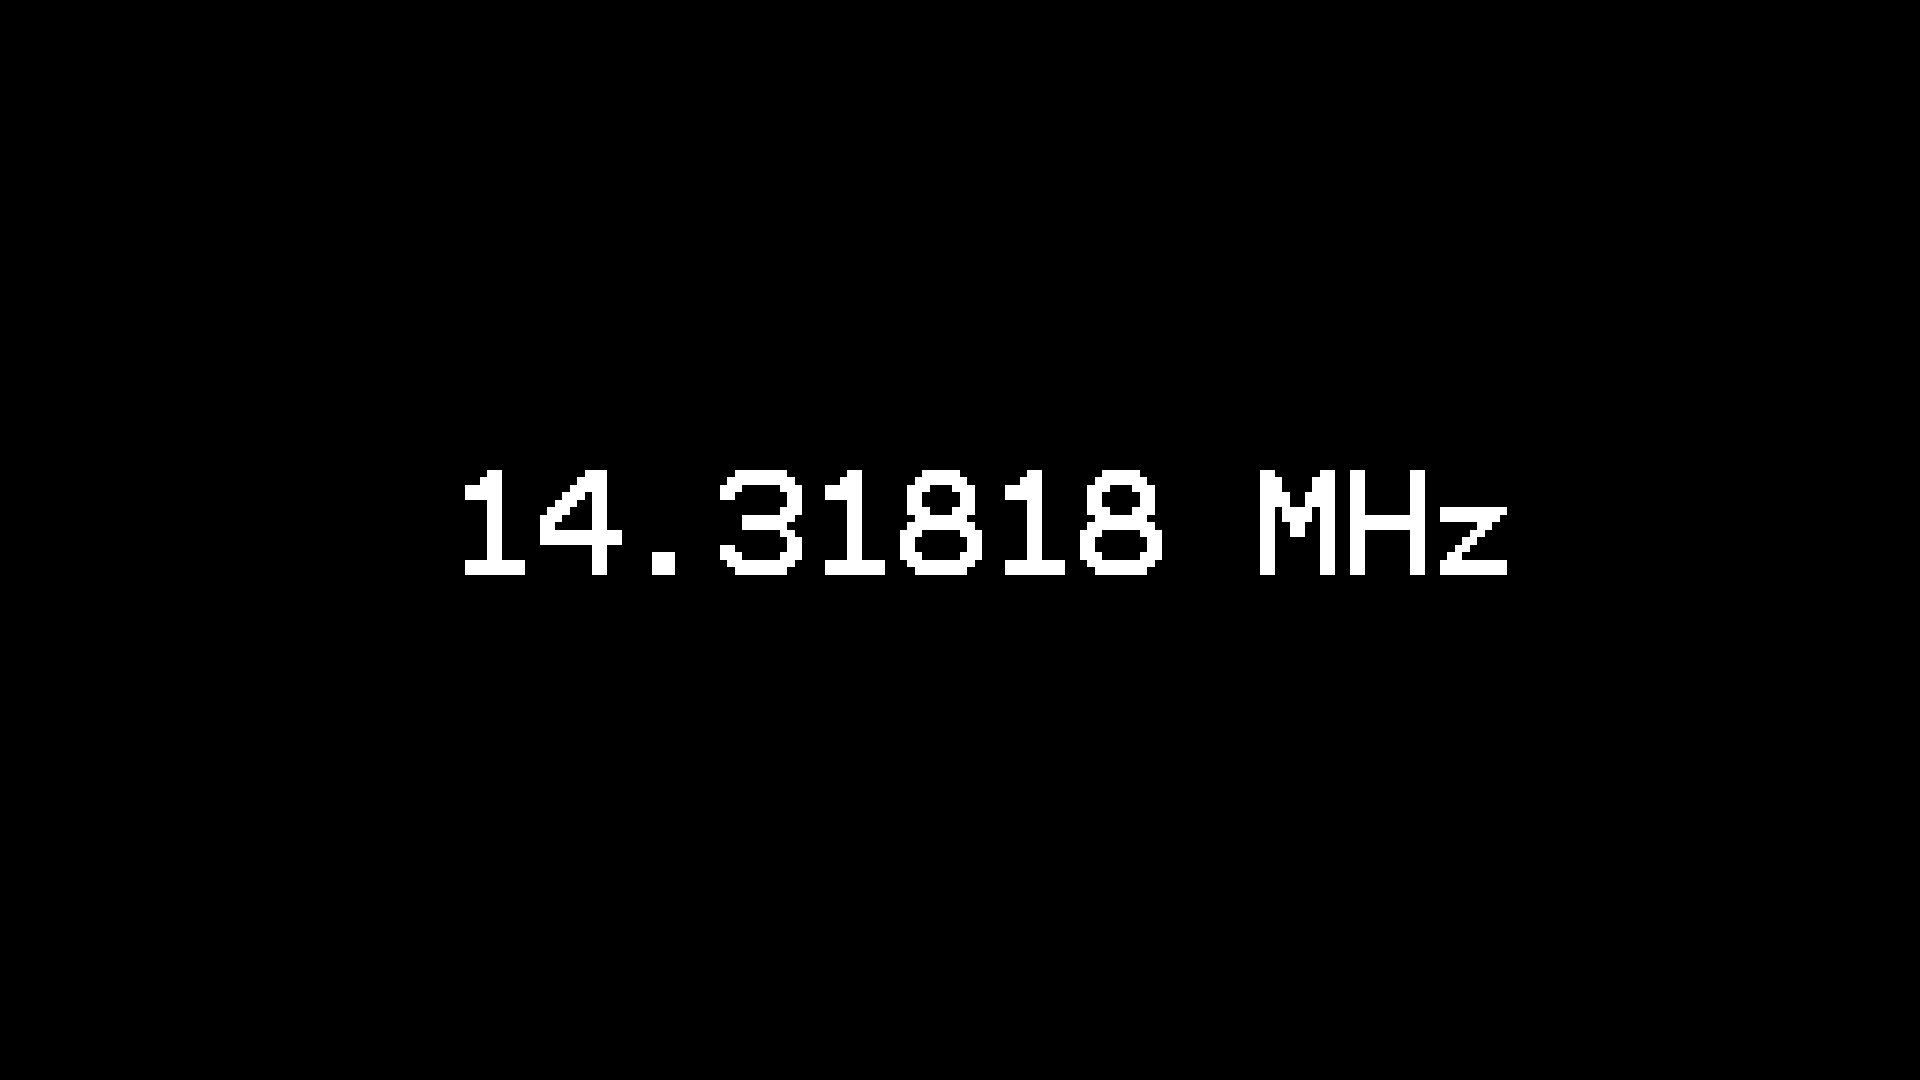 14.31818Mhz